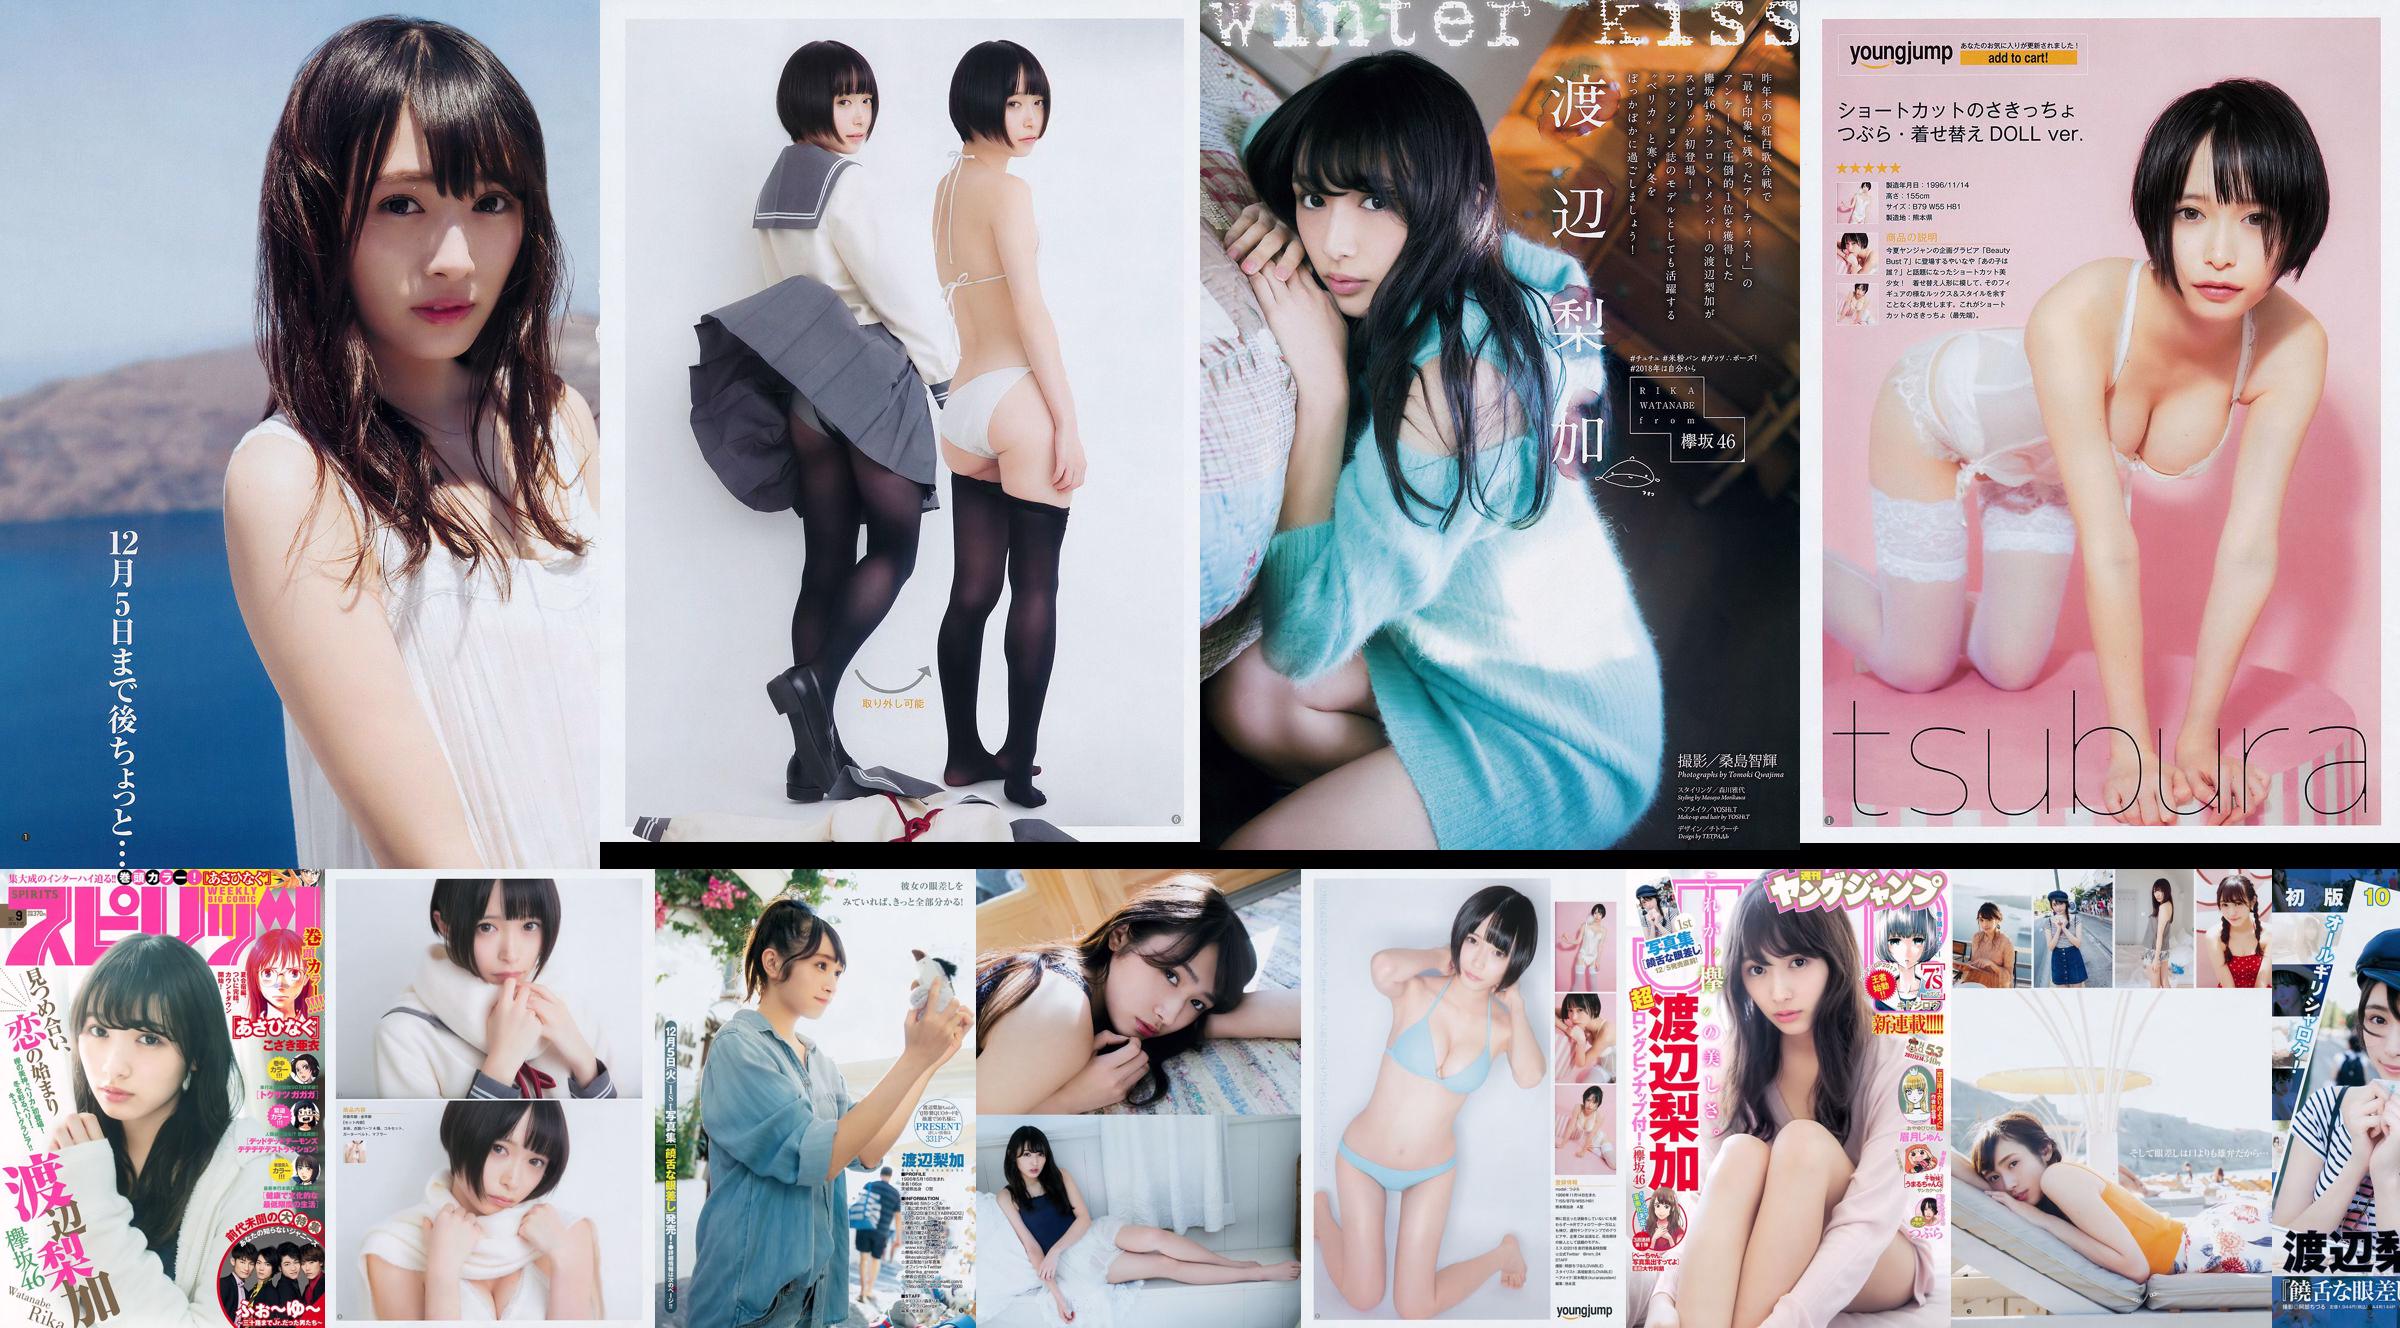 [Wöchentliche große Comic-Geister] Rika Watanabe 2018 No.09 Photo Magazine No.af0065 Seite 3